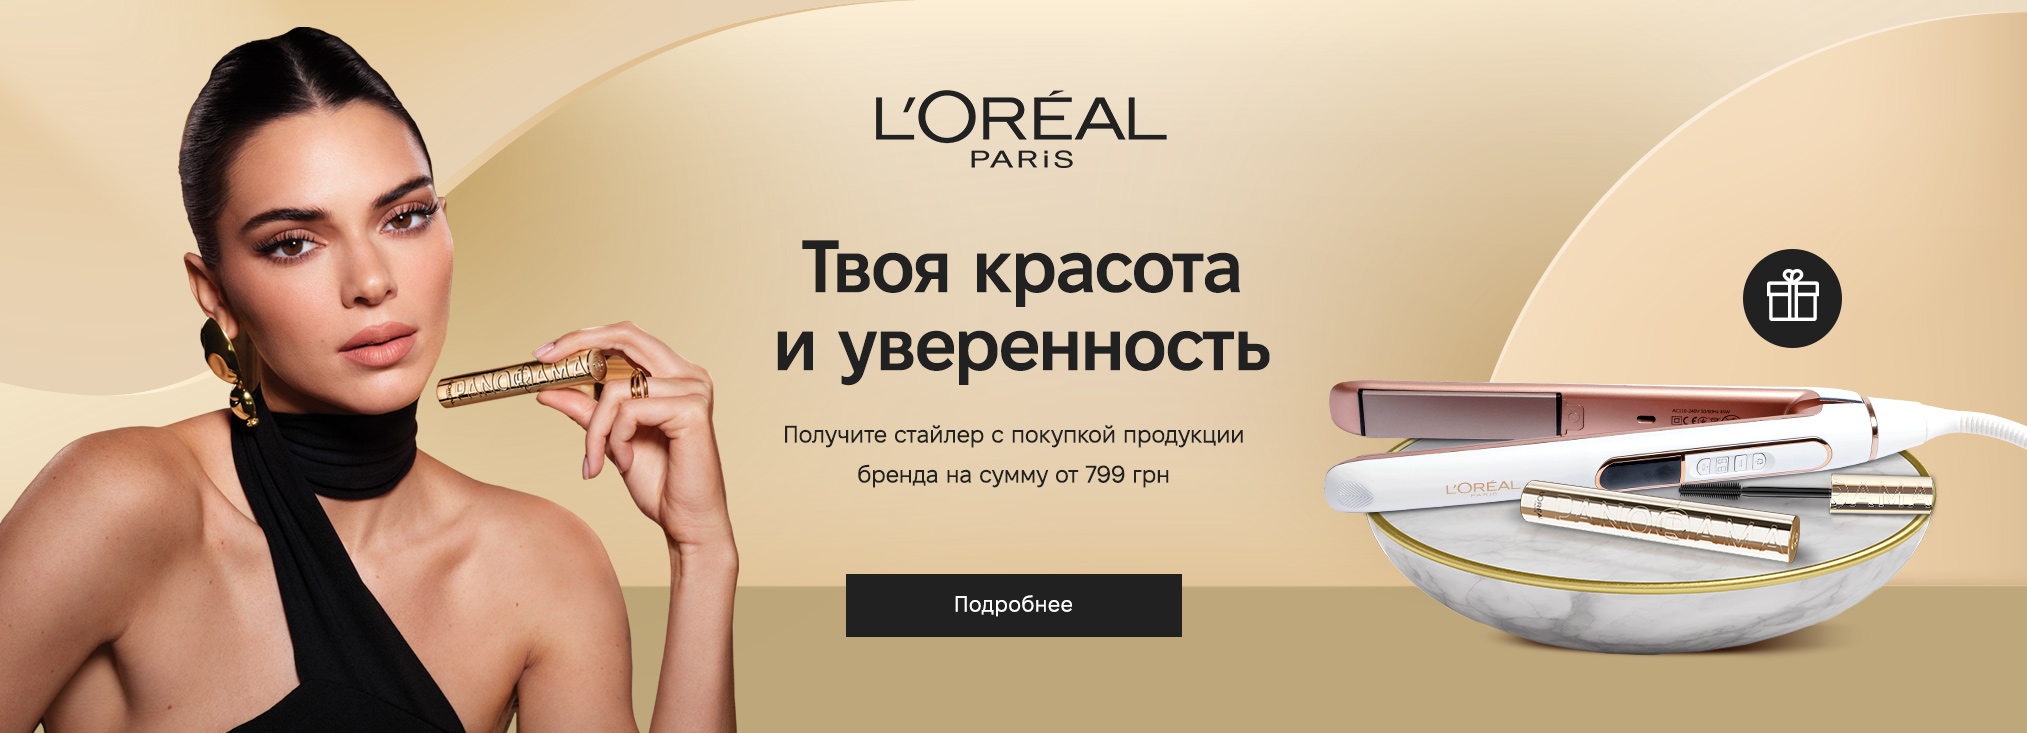 Профессиональная косметика для макияжа - купить на afisha-piknik.ru